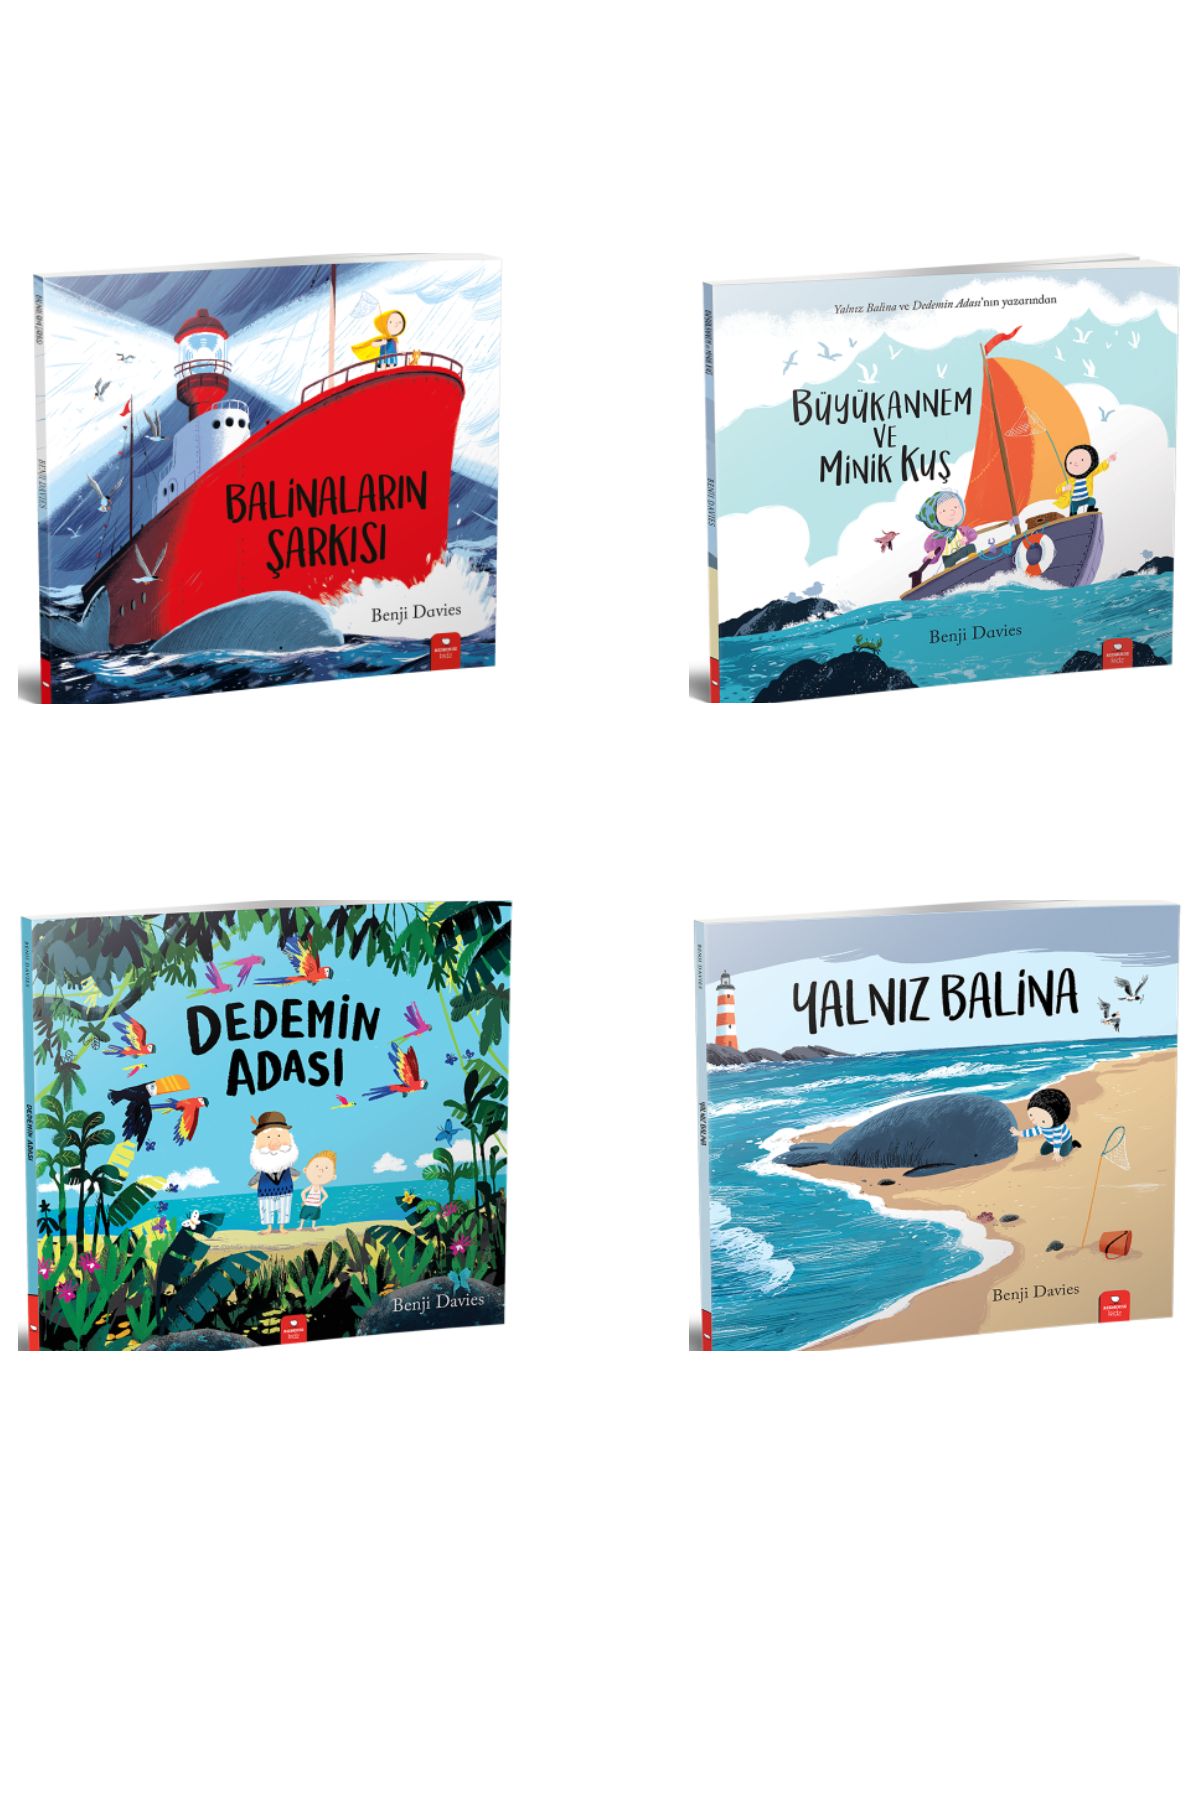 Redhouse Kidz Yayınları Balinaların Şarkısı-Büyükannem ve Minik Kuş-Dedemin Adası-Yalnız Balina - Benji Davies Set